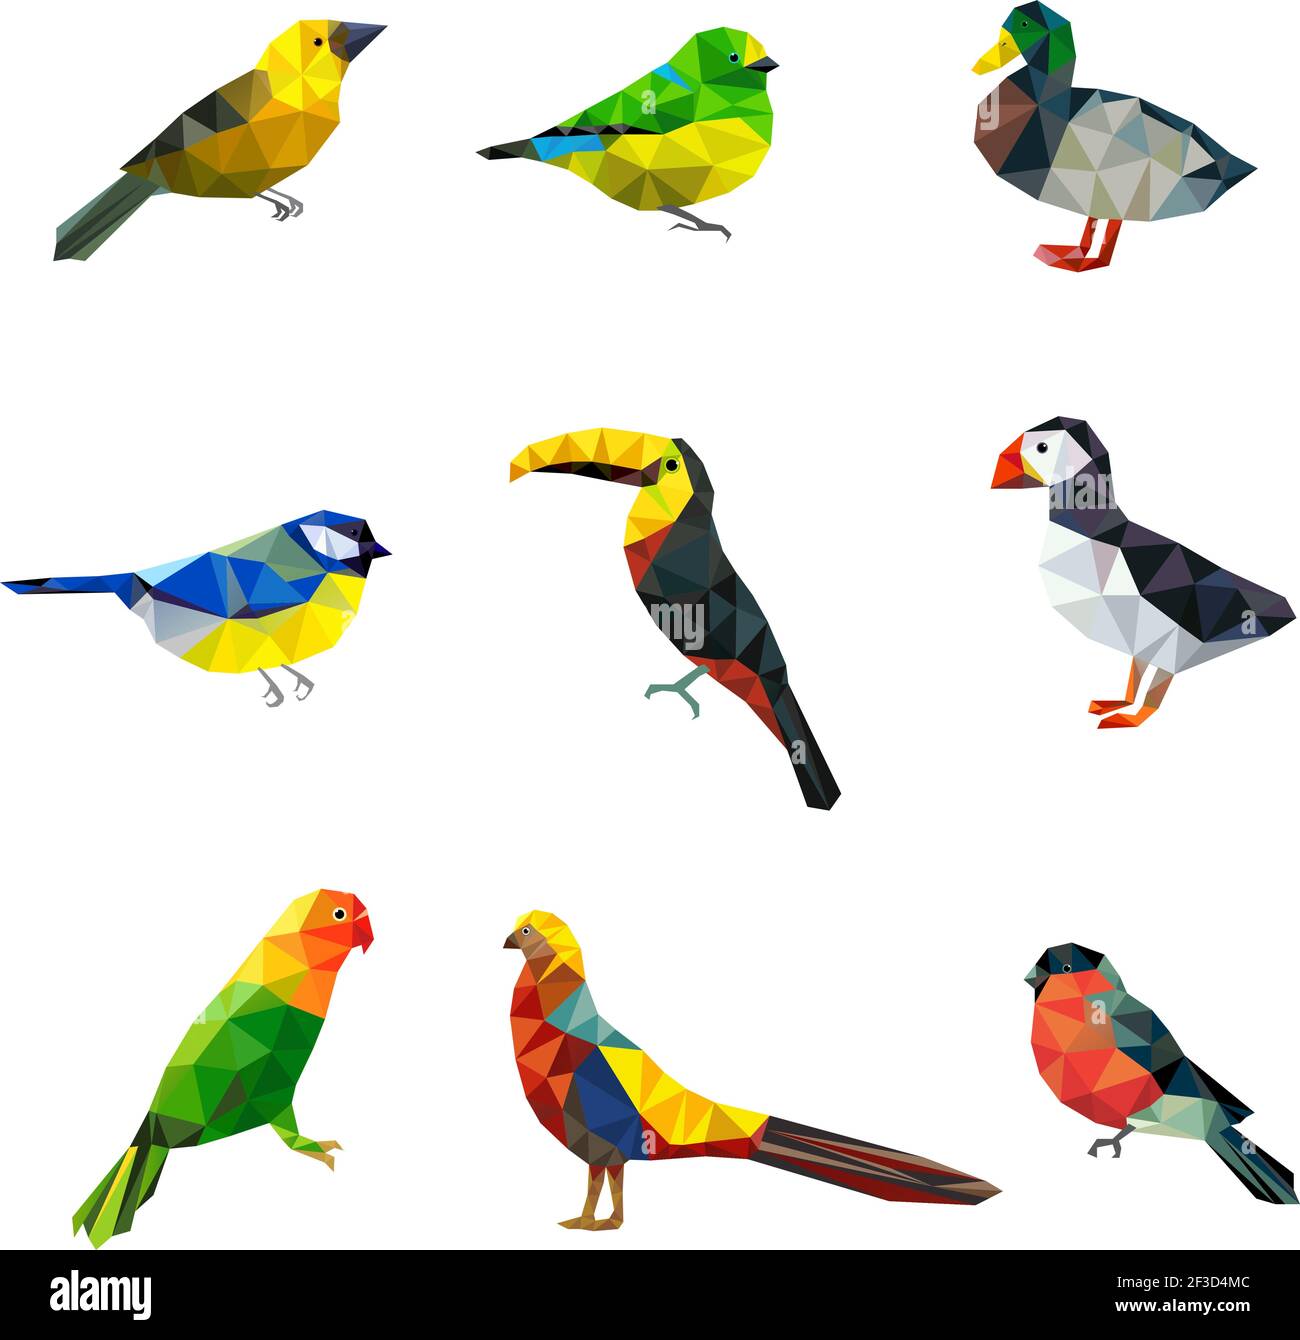 Polygonale Vögel. Dreieck abstrakte Formen Grafik fliegende Vögel Sammlung asiatische Tiere Vektor Zeichen Sammlung Stock Vektor